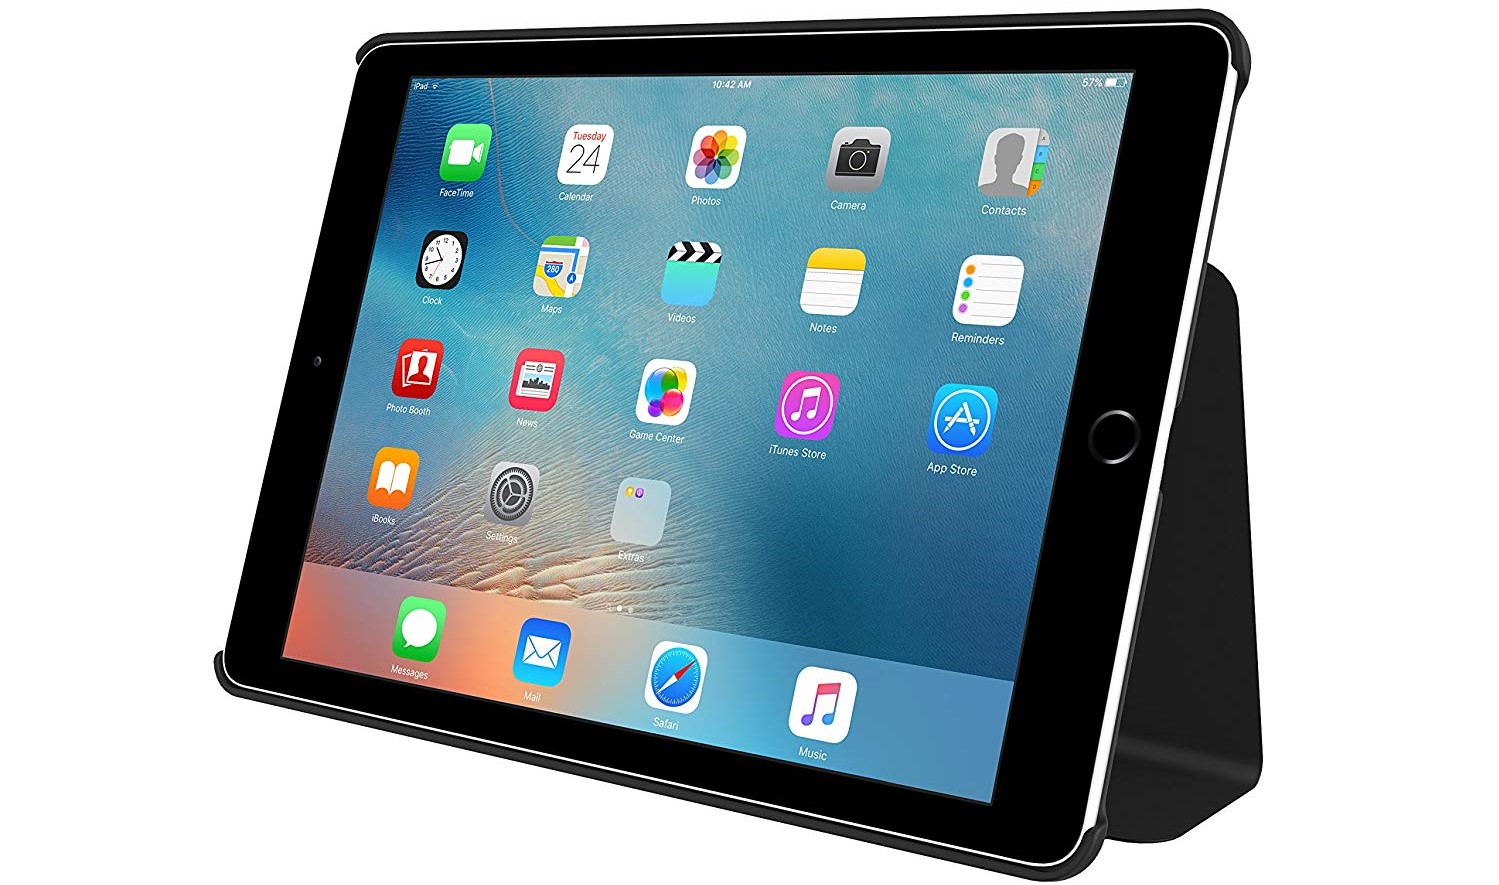 Чехол Incipio Lexington for Apple iPad Pro 9.7 - Black